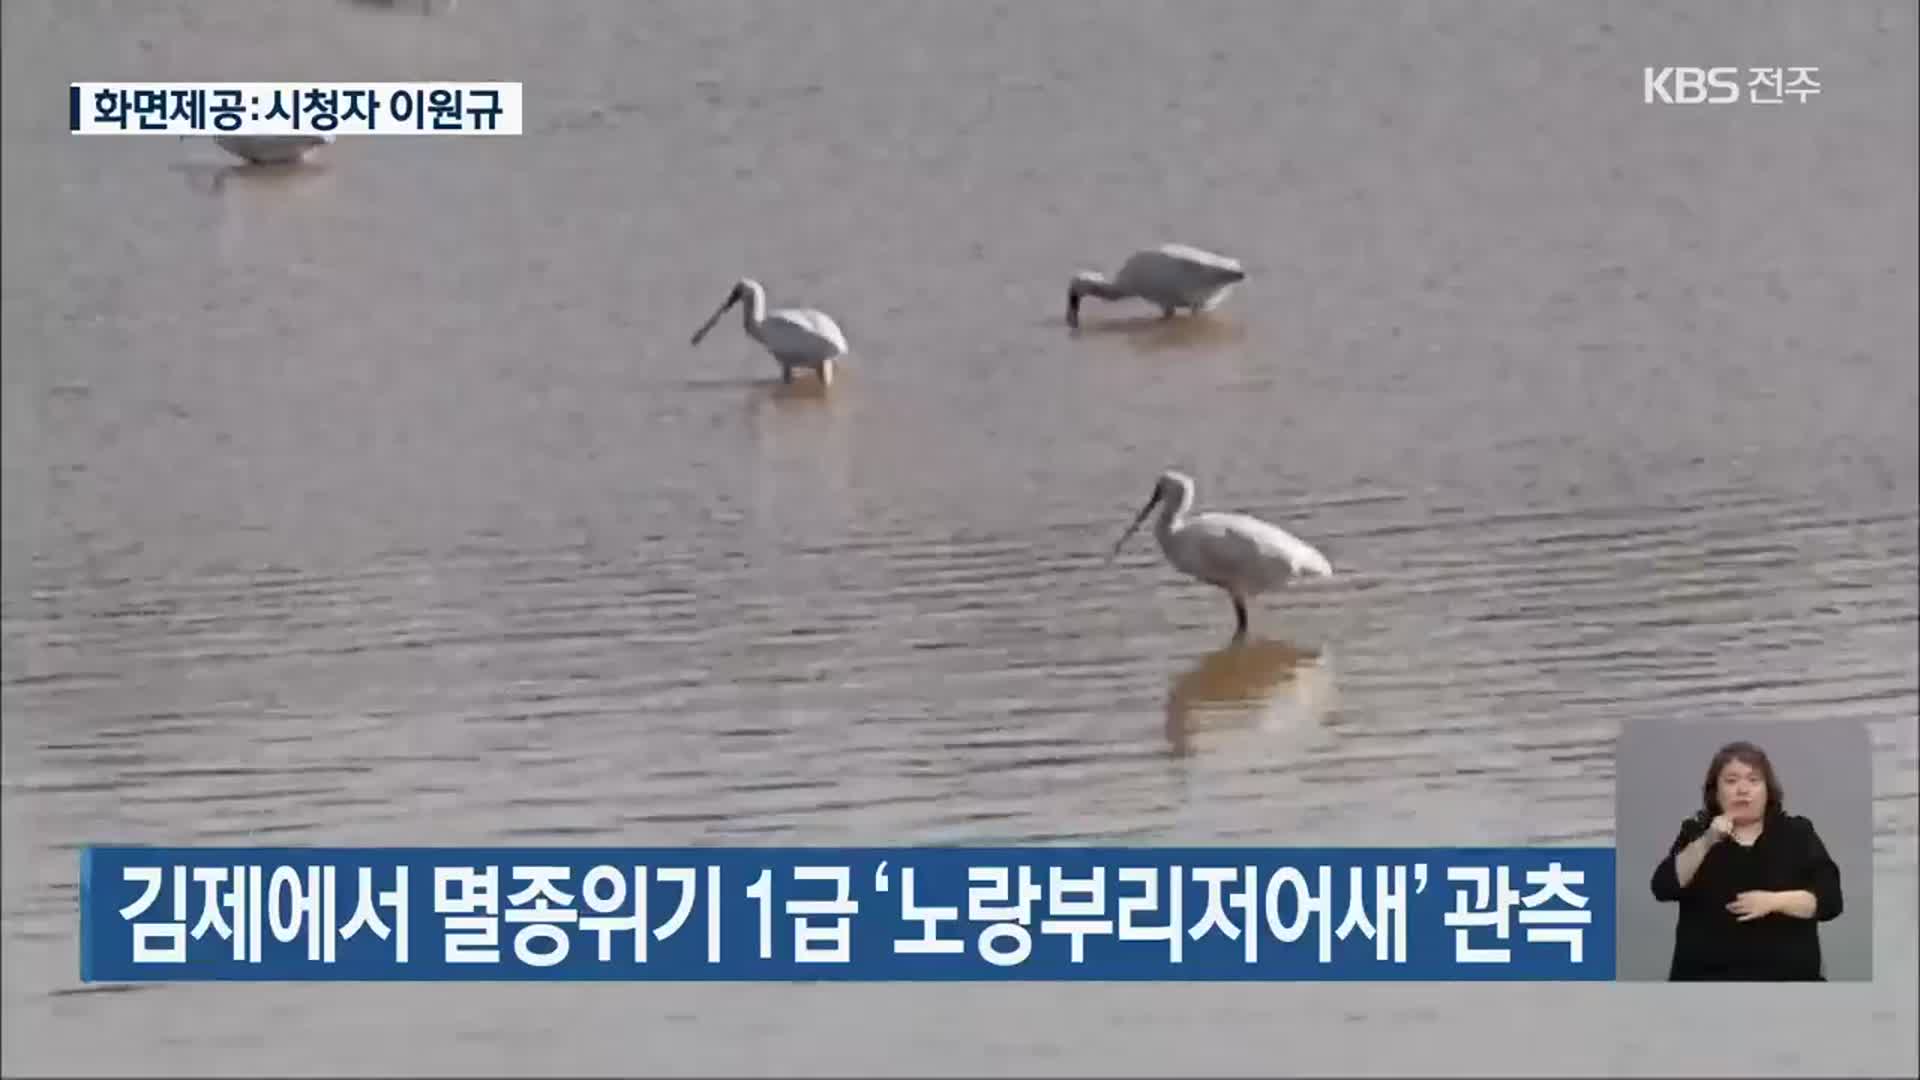 김제에서 멸종위기 1급 ‘노랑부리저어새’ 관측